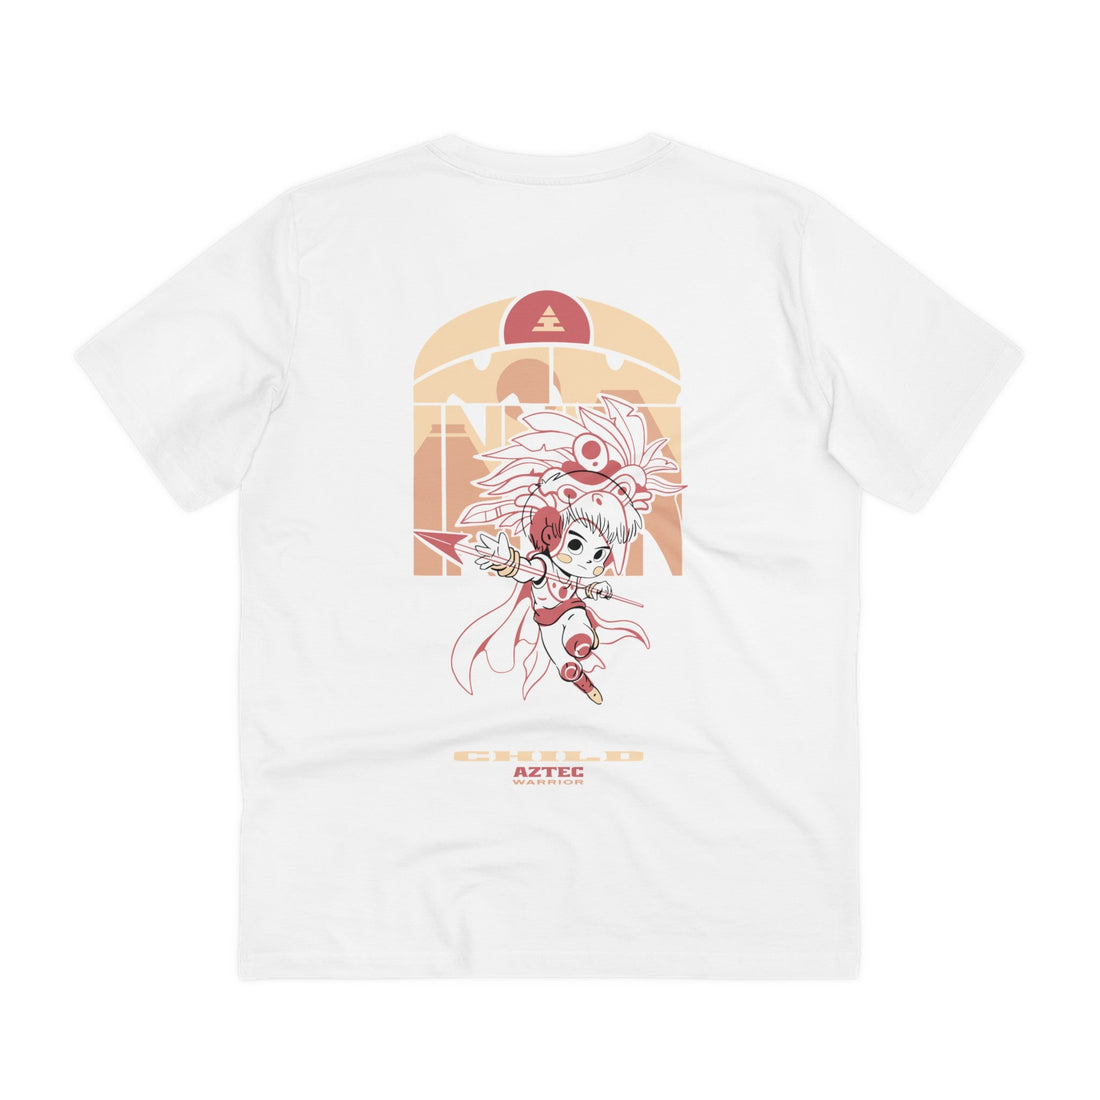 Printify T-Shirt White / 2XS Aztec Warrior Child - Warrior Kids - Back Design